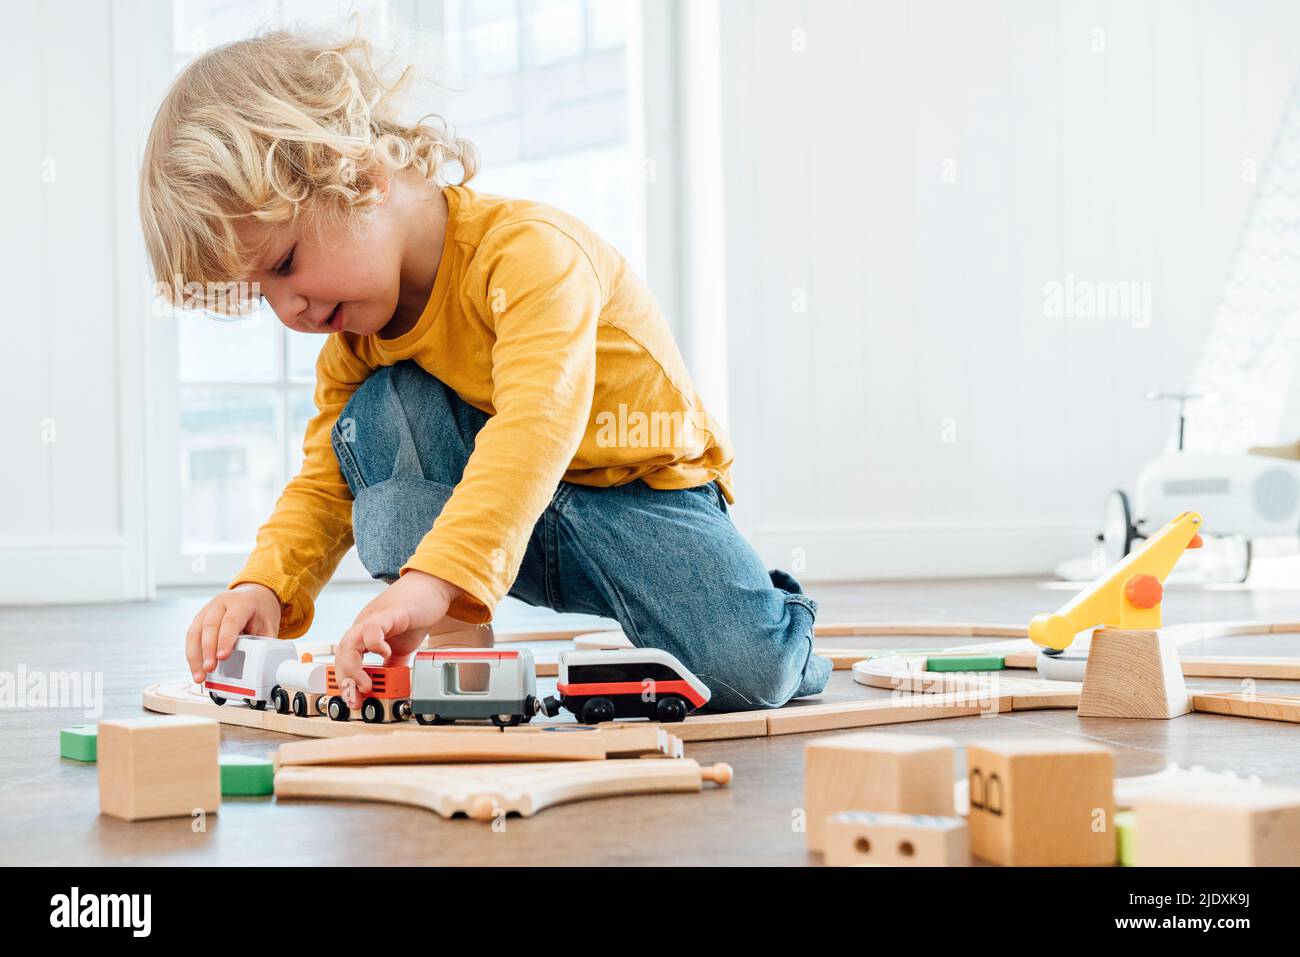 Niedlicher Junge mit blonden Haaren, der zu Hause mit dem Spielzeug-Zug spielt Stockfoto